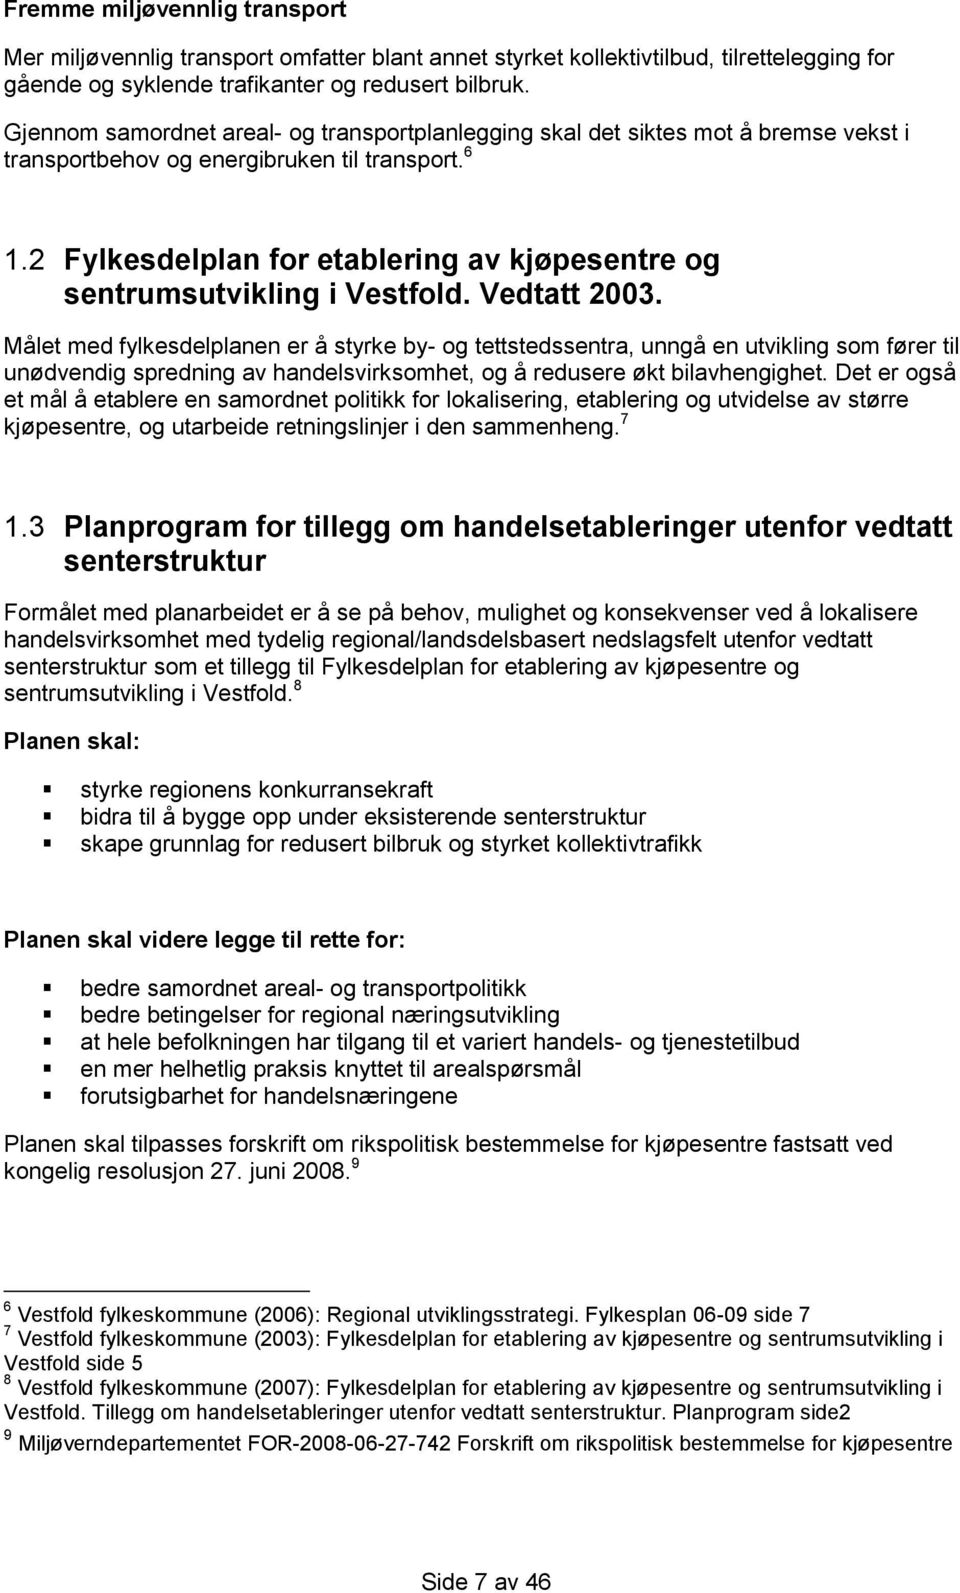 2 Fylkesdelplan for etablering av kjøpesentre og sentrumsutvikling i Vestfold. Vedtatt 2003.